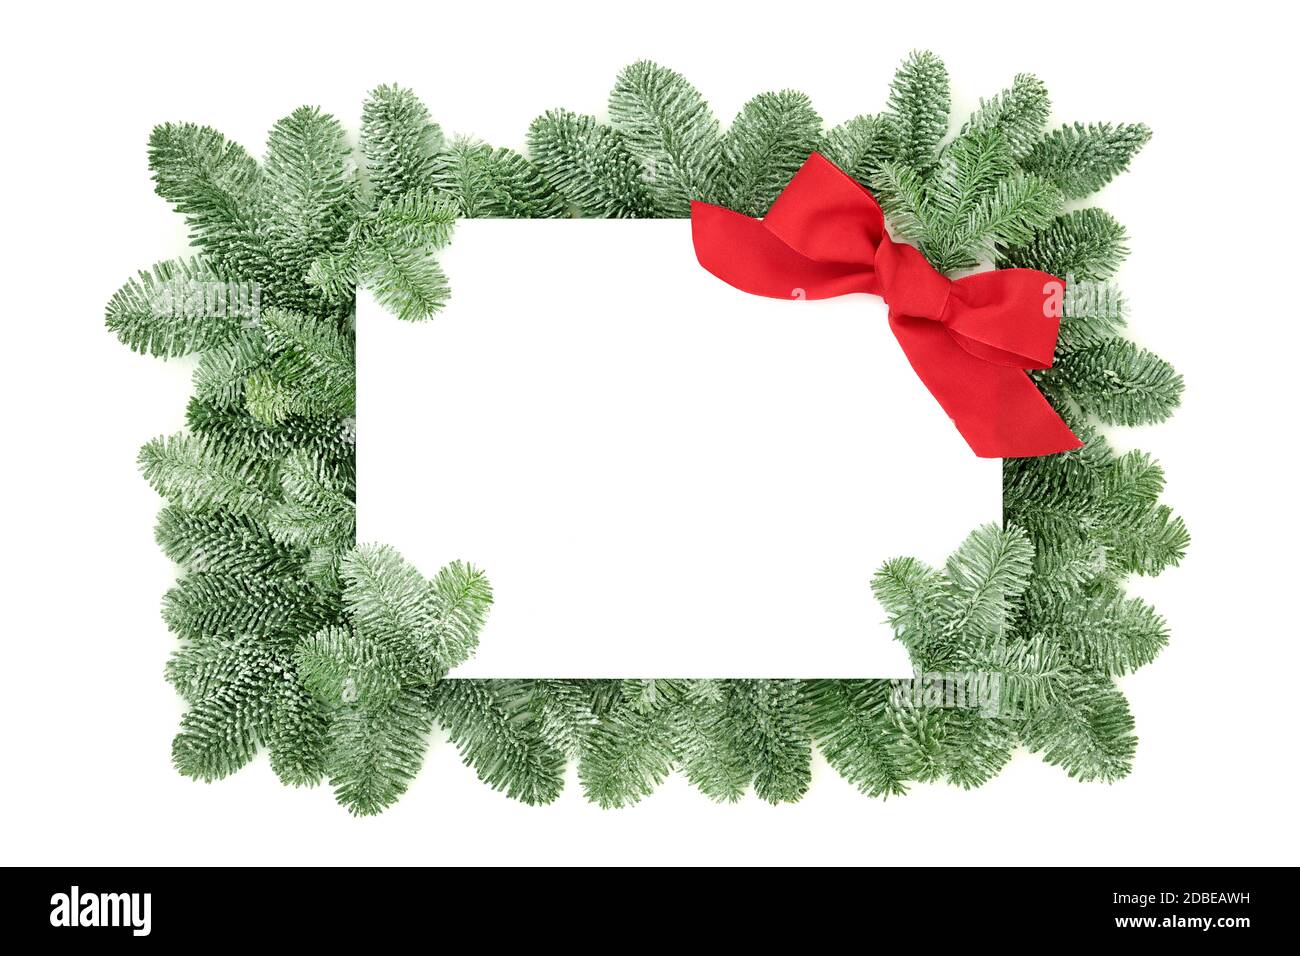 Bordure du solstice d'hiver et de Noël avec sapin d'épinette recouvert de neige et arc rouge sur fond blanc. Élément décoratif pour la saison des fêtes et New Yea Banque D'Images